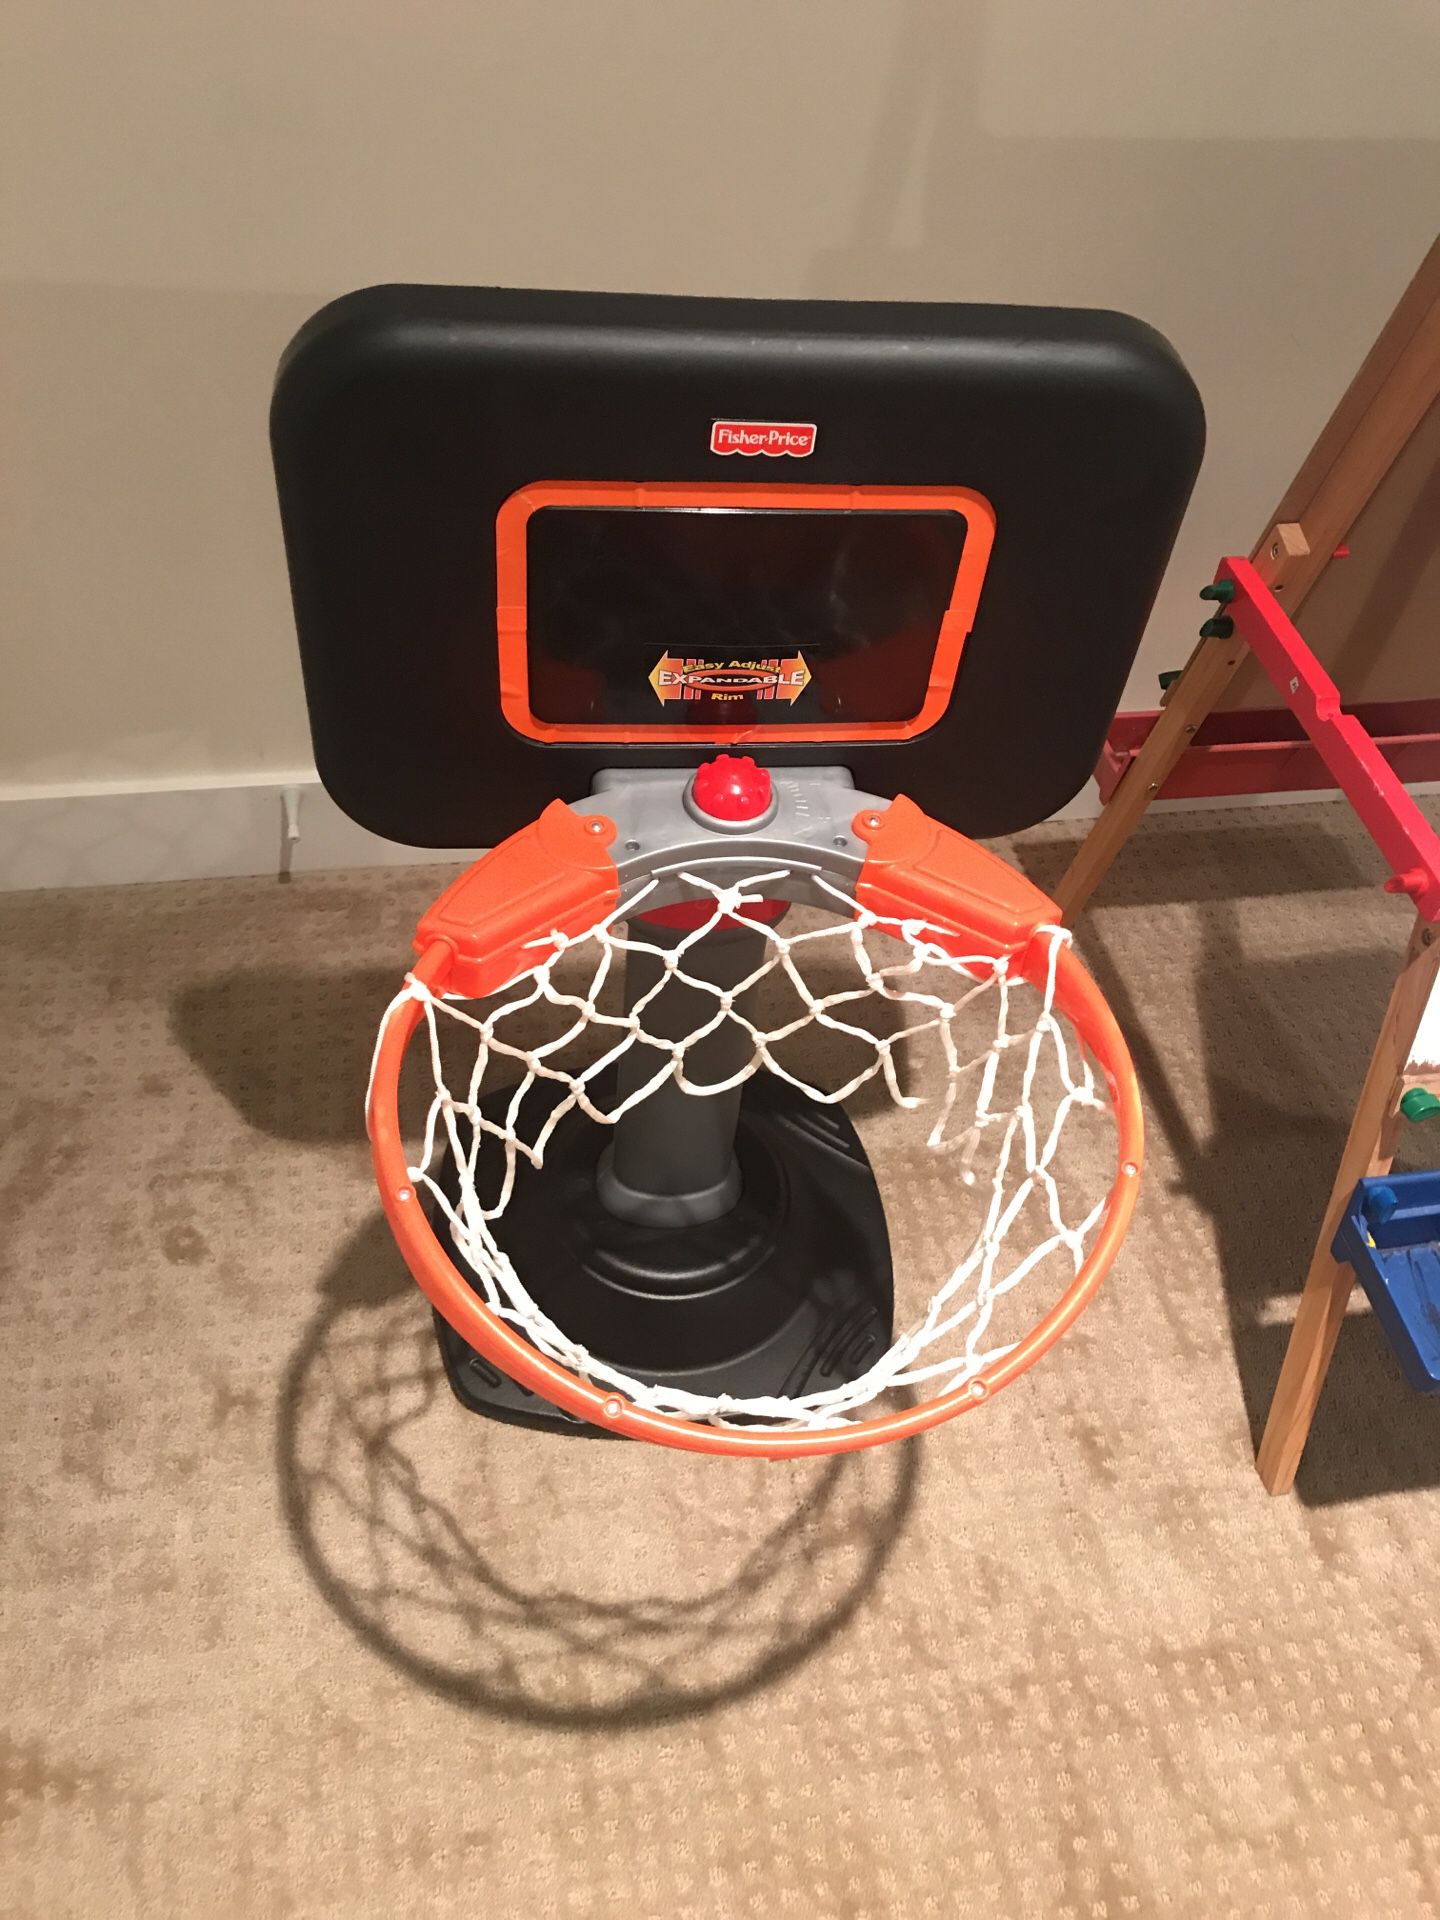 Fischer price indoor basketball hoop